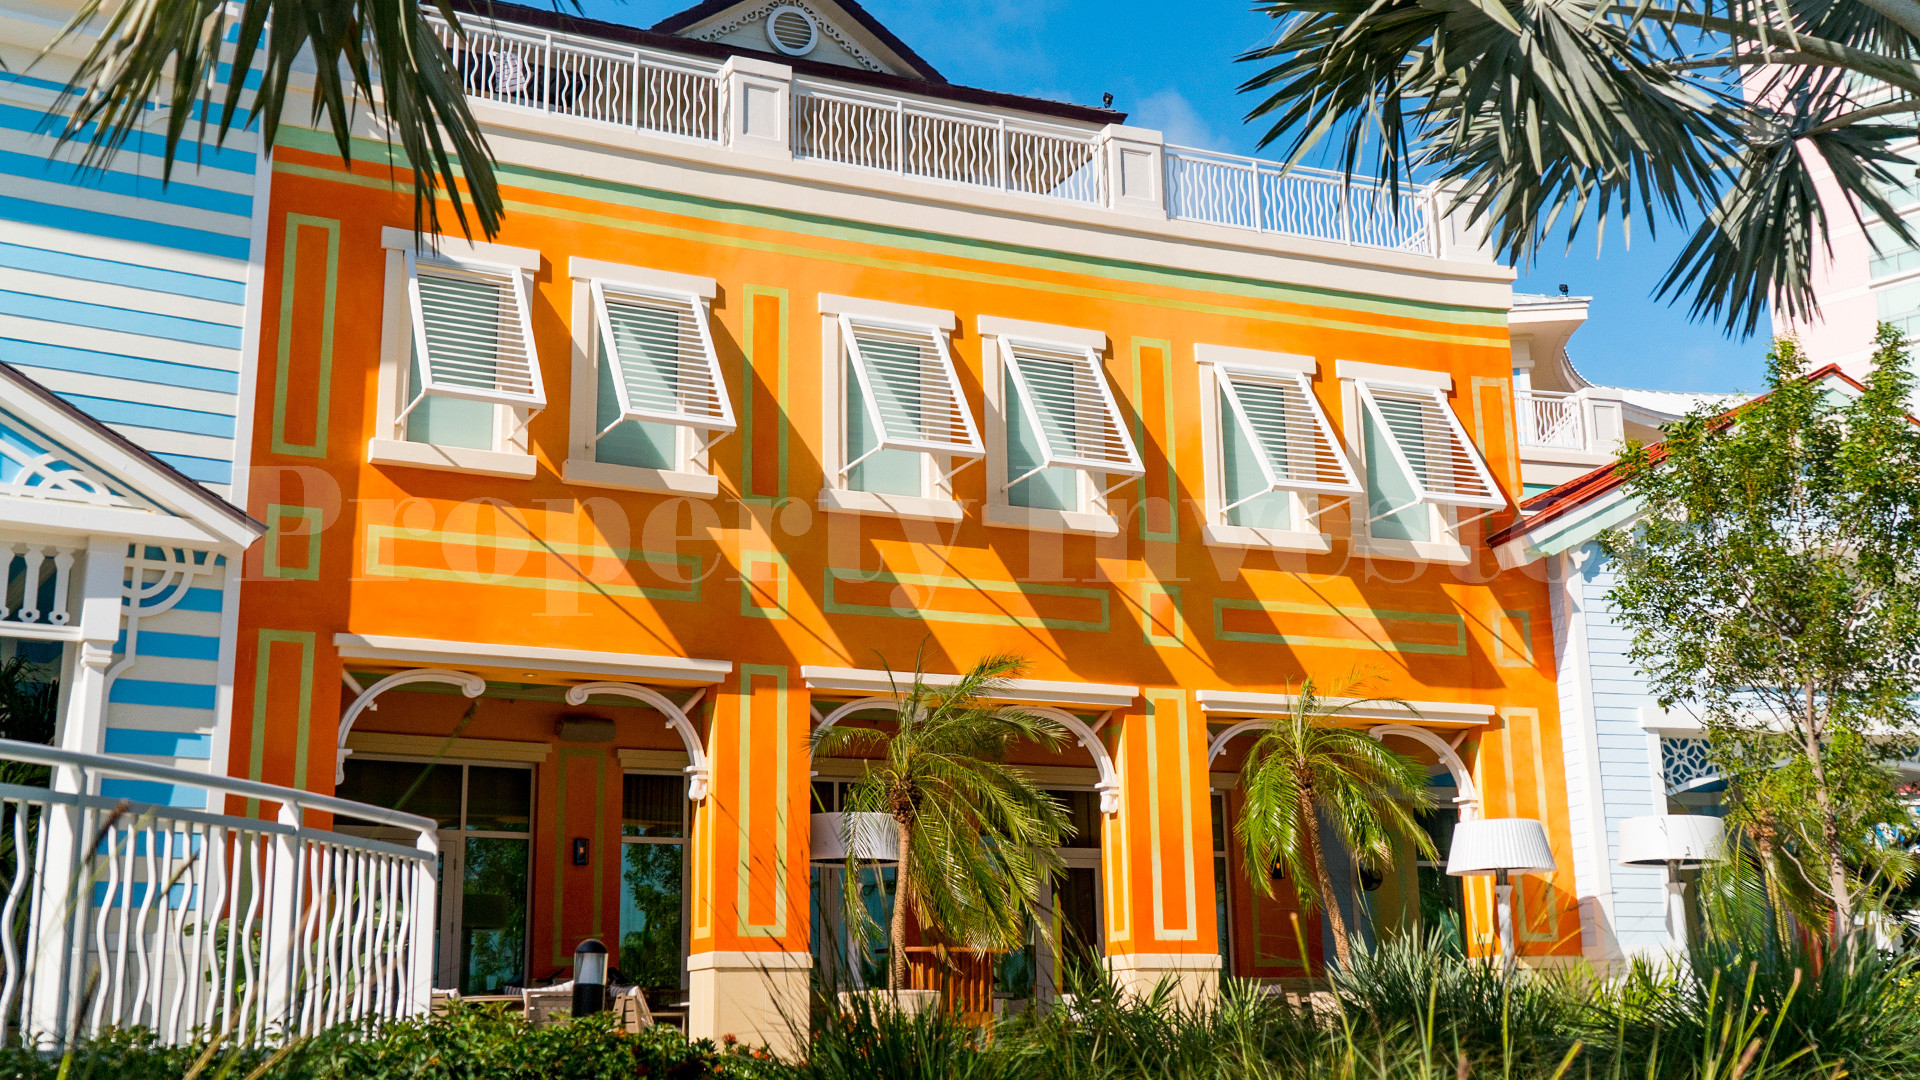 2 Bedroom Condo-Hotel Suite in the Bahamas (Suite 318)